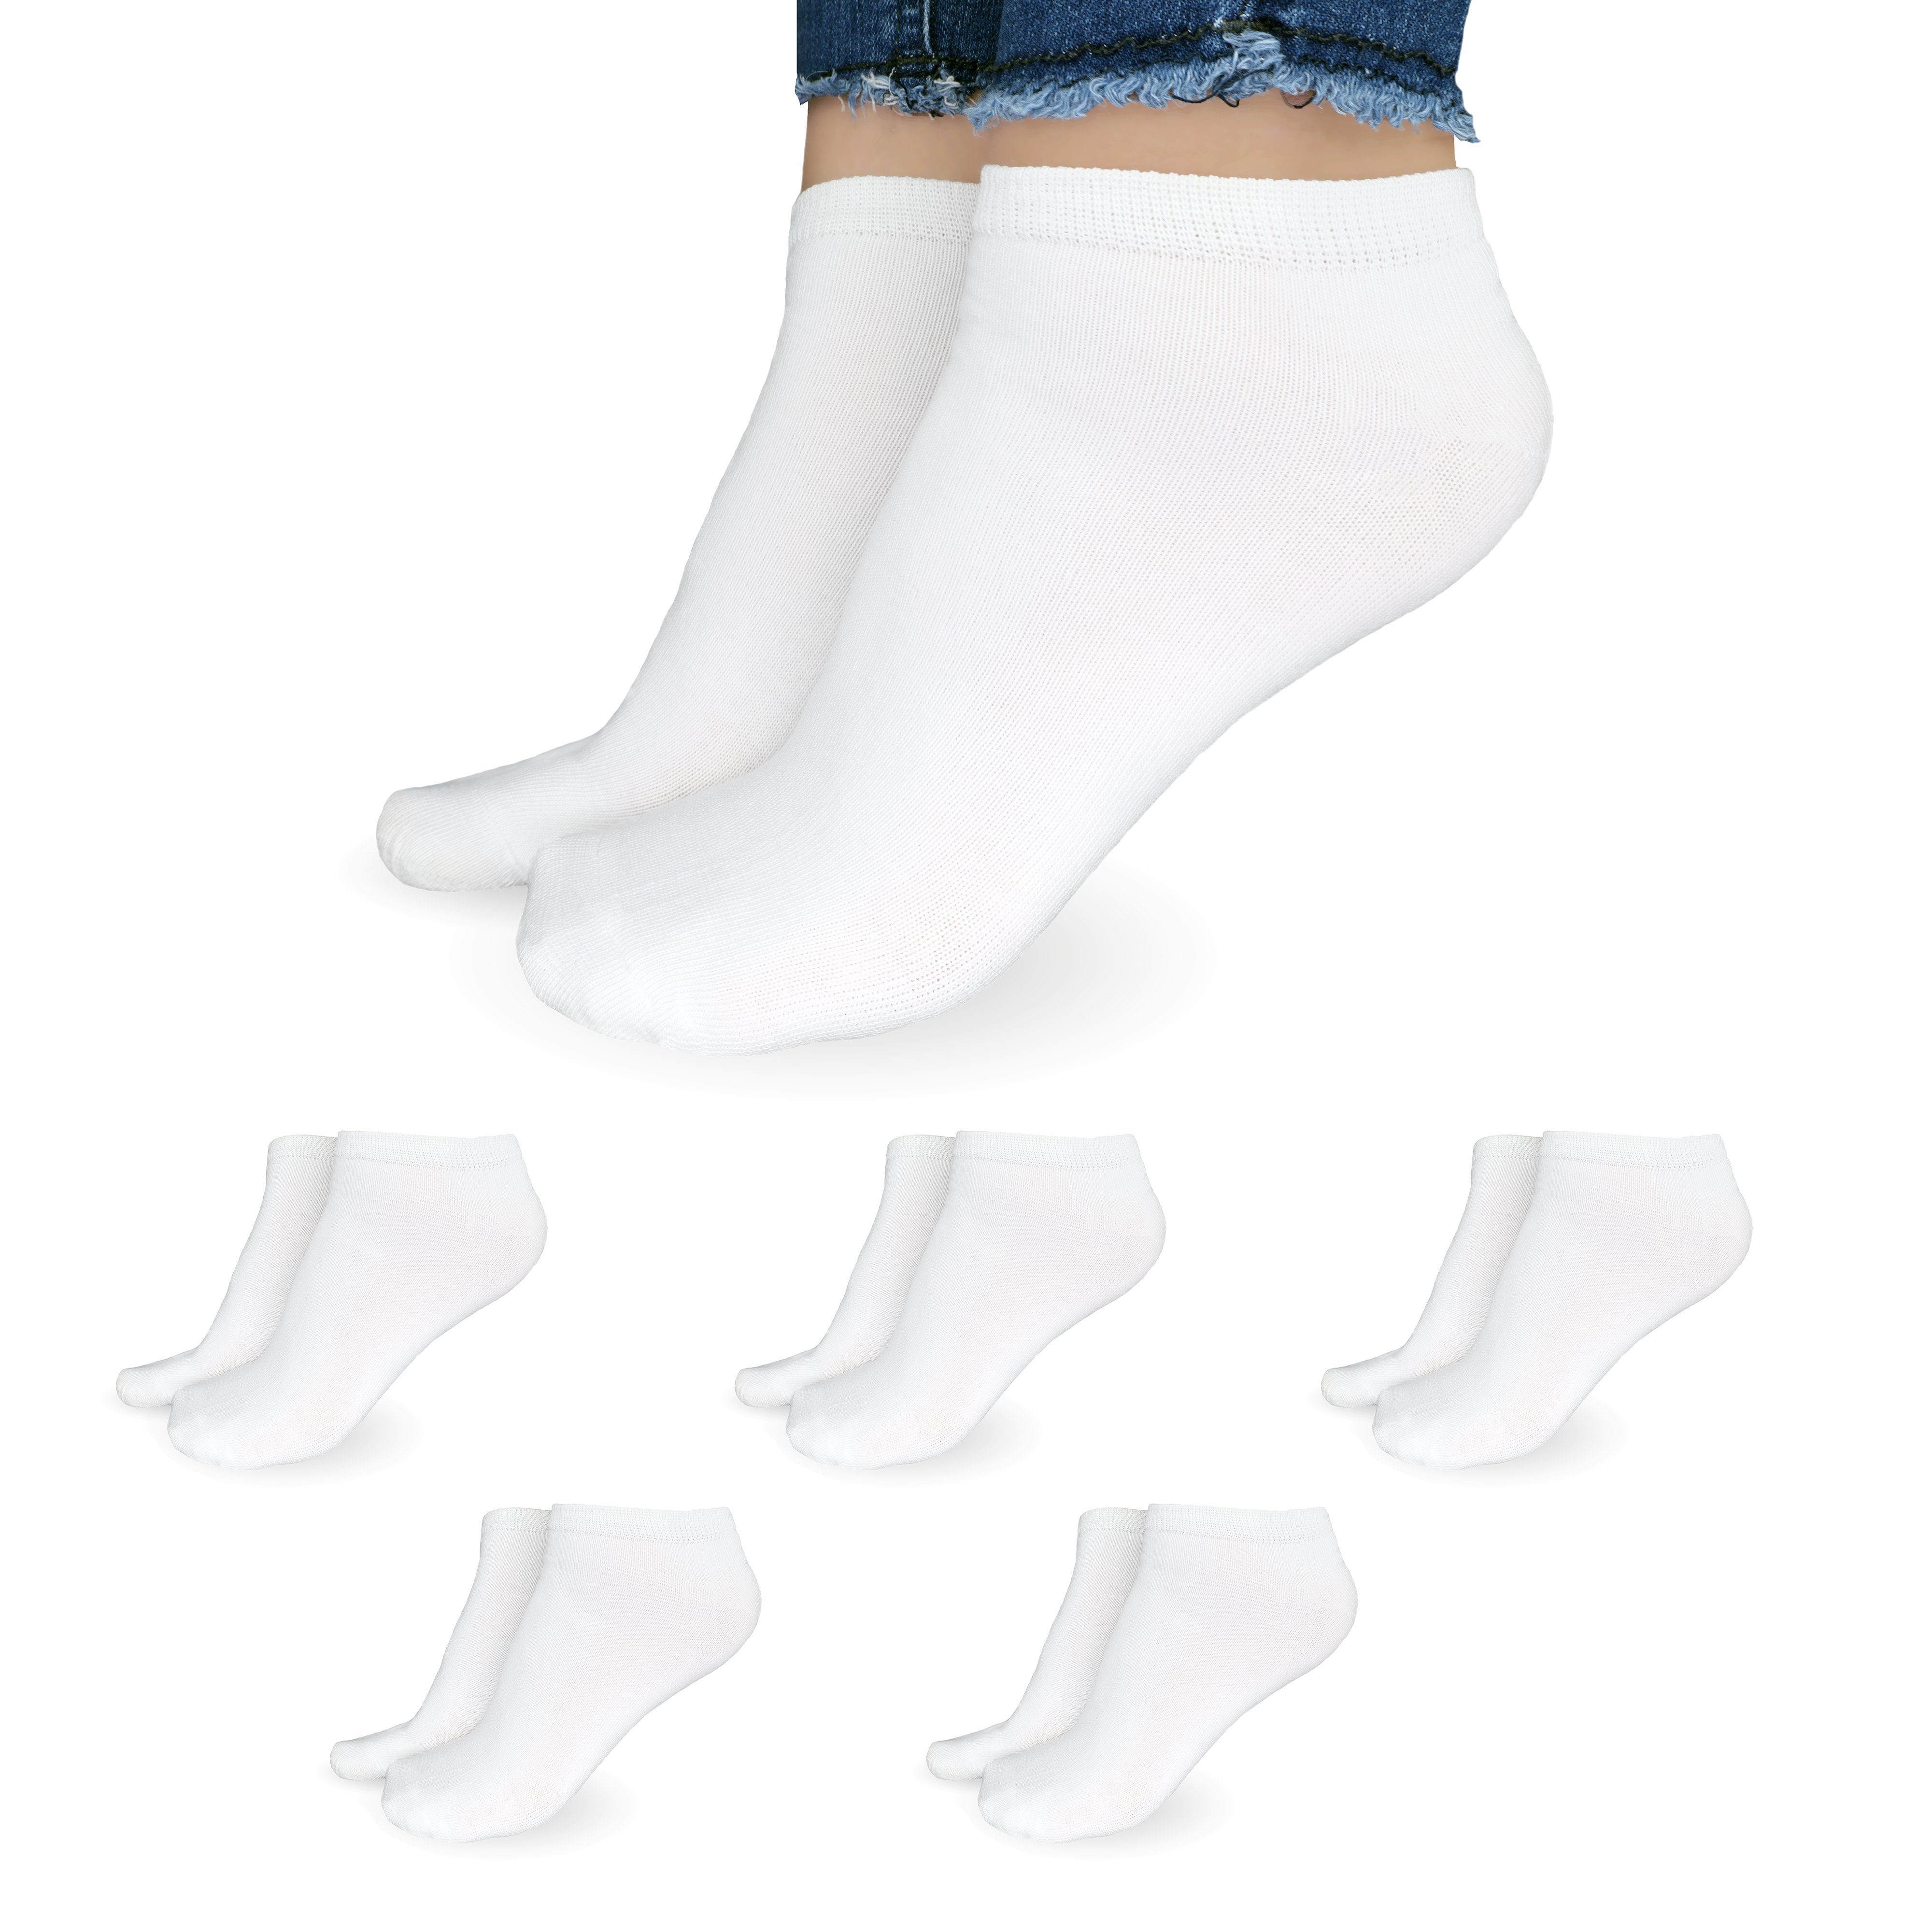 SO.I Freizeitsocken Sneaker Socken Damen & Herren aus Baumwolle (Größen 35-46, 5-20 Paar) atmungsaktive Unisex Socken 5x Weiß